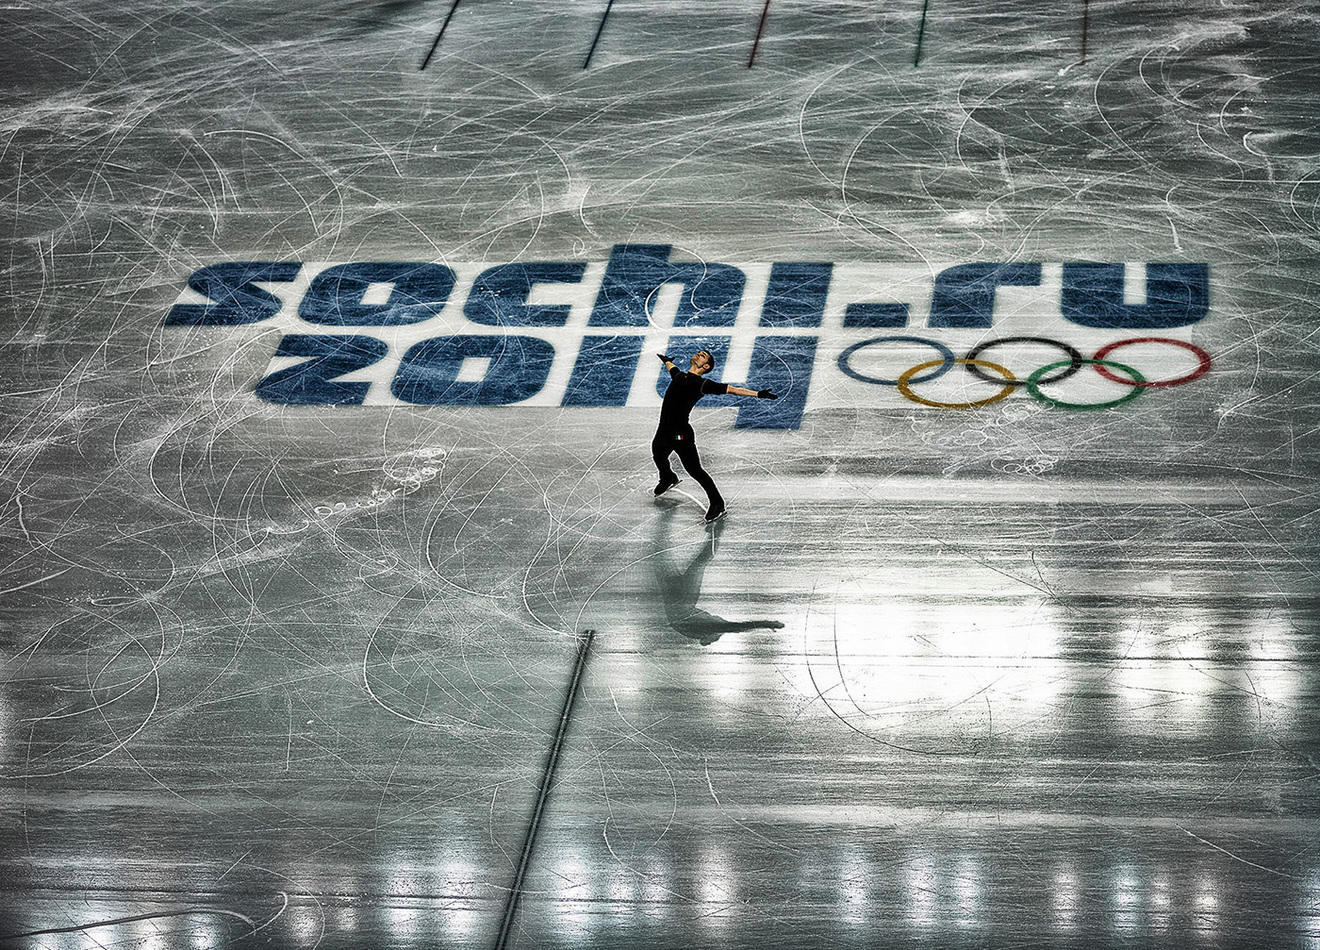 Paul Bonifacio Parkinson (ITAL) in Men's Figure Skating training   ©2014 David Burnett/IOC : Sochi 2014 - the Winter Games : David Burnett | Photographer